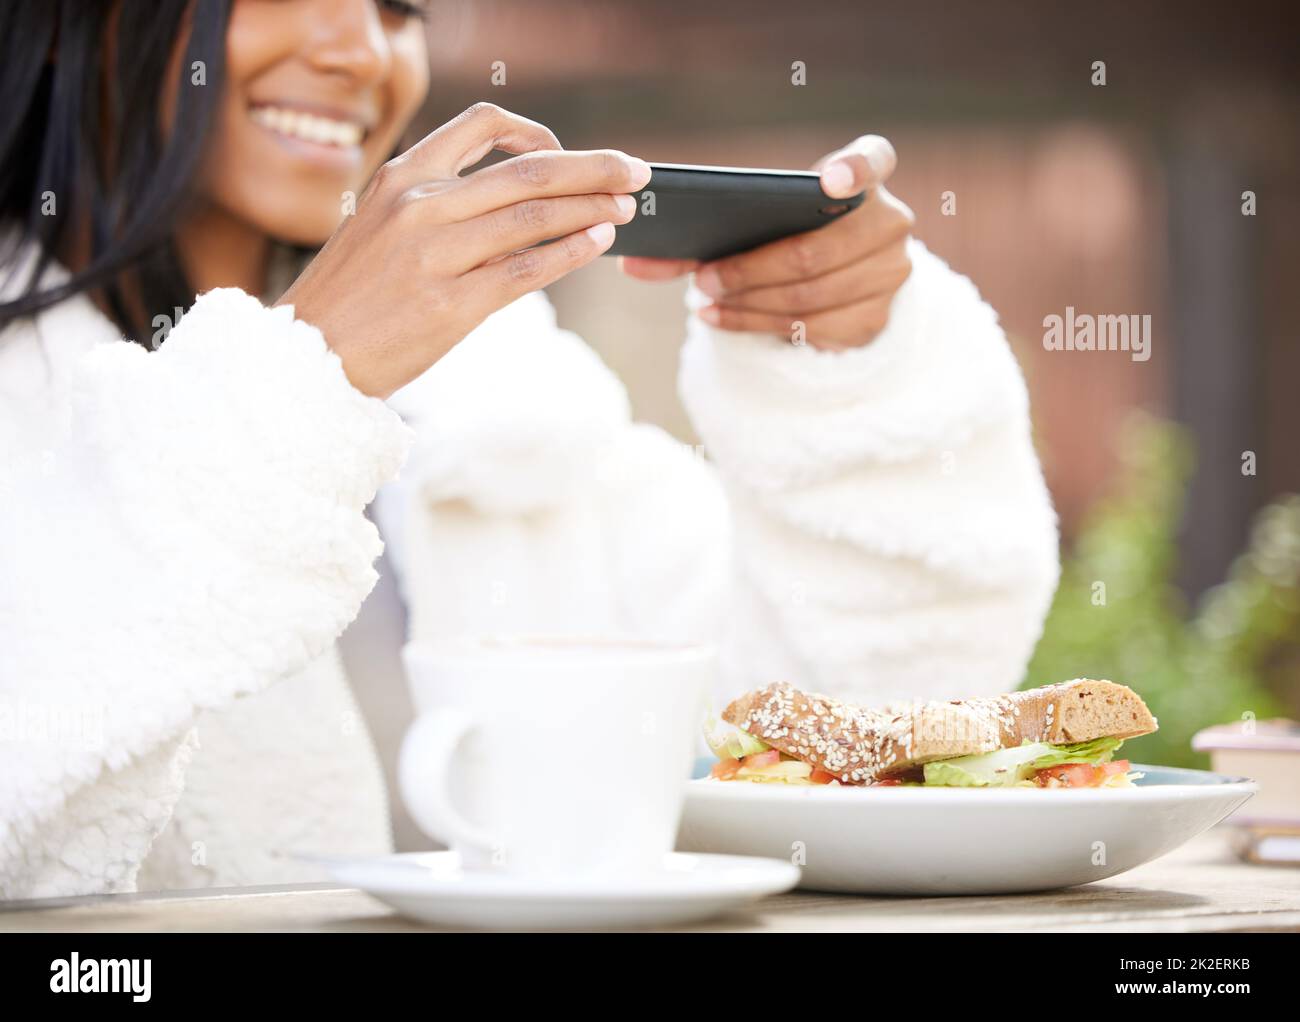 Je dois avoir une photo pour mes amis. Photo d'une jeune femme prenant une photo d'une assiette de nourriture. Banque D'Images